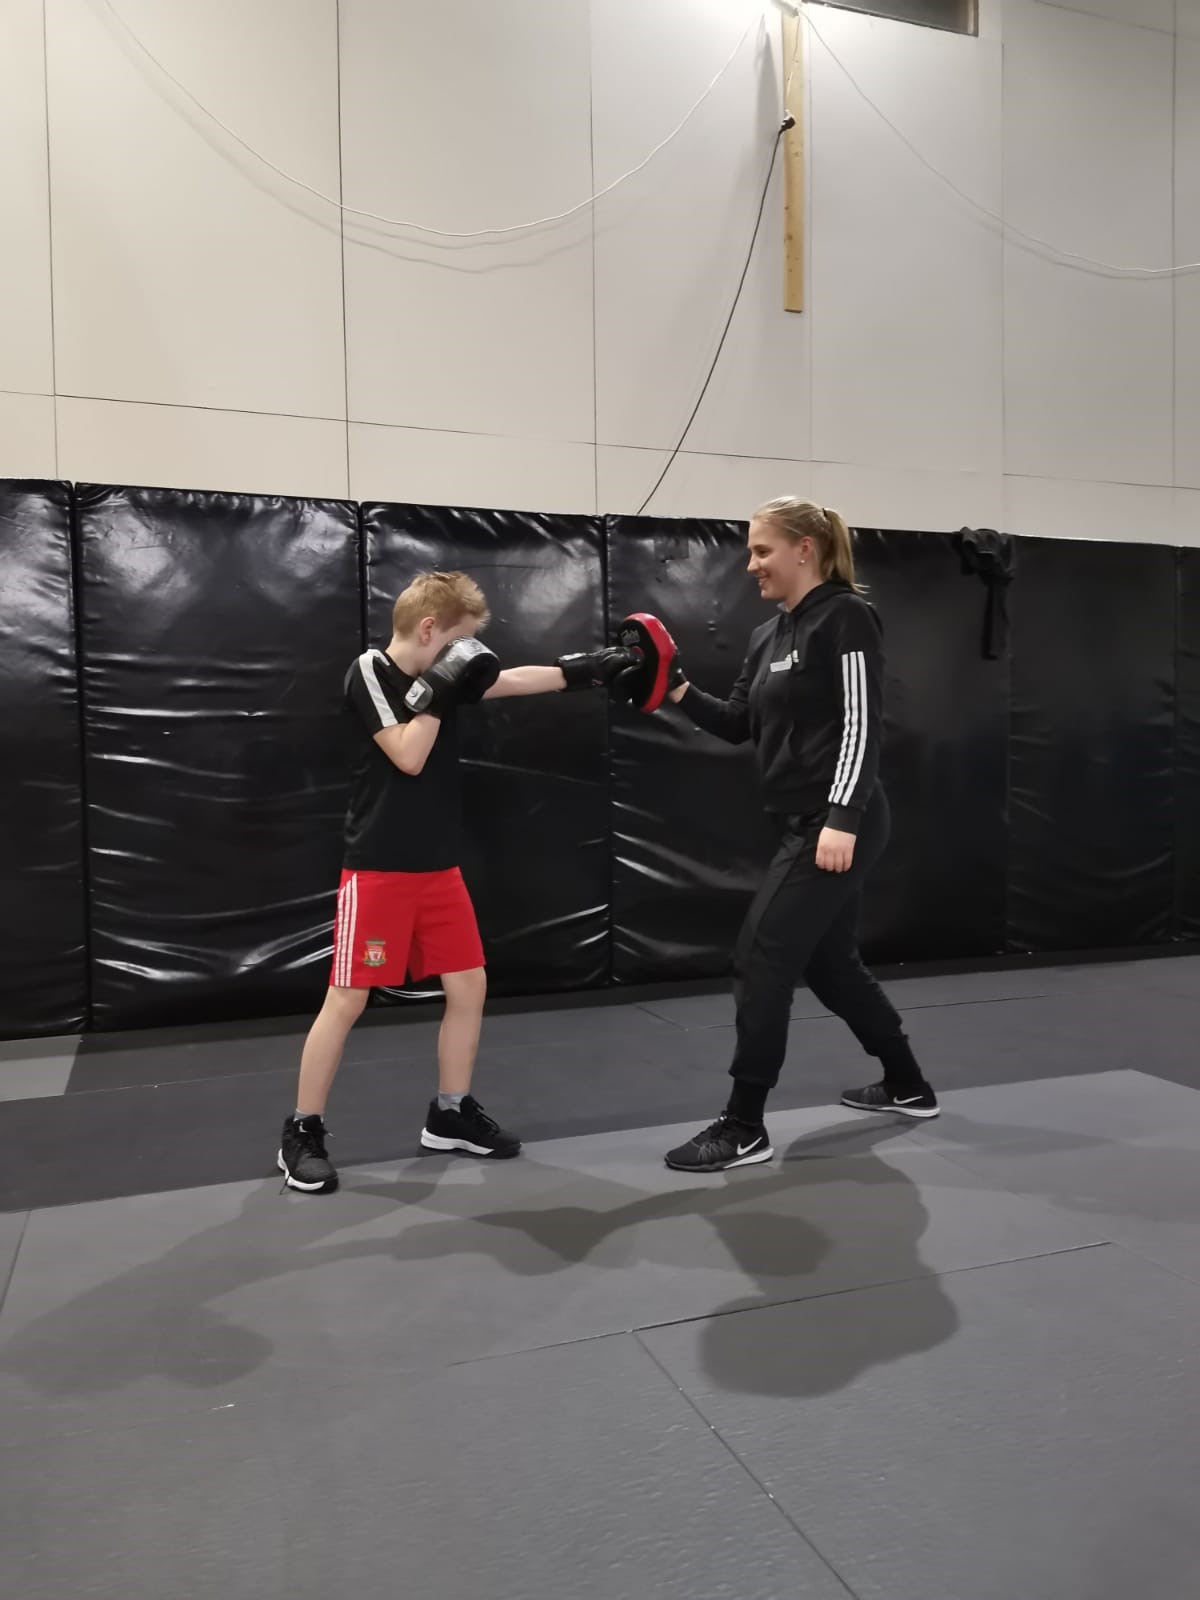 Kuva, jossa poika harjoittelee nyrkkeilyä Valttina toimivan nuoren naisen kanssa